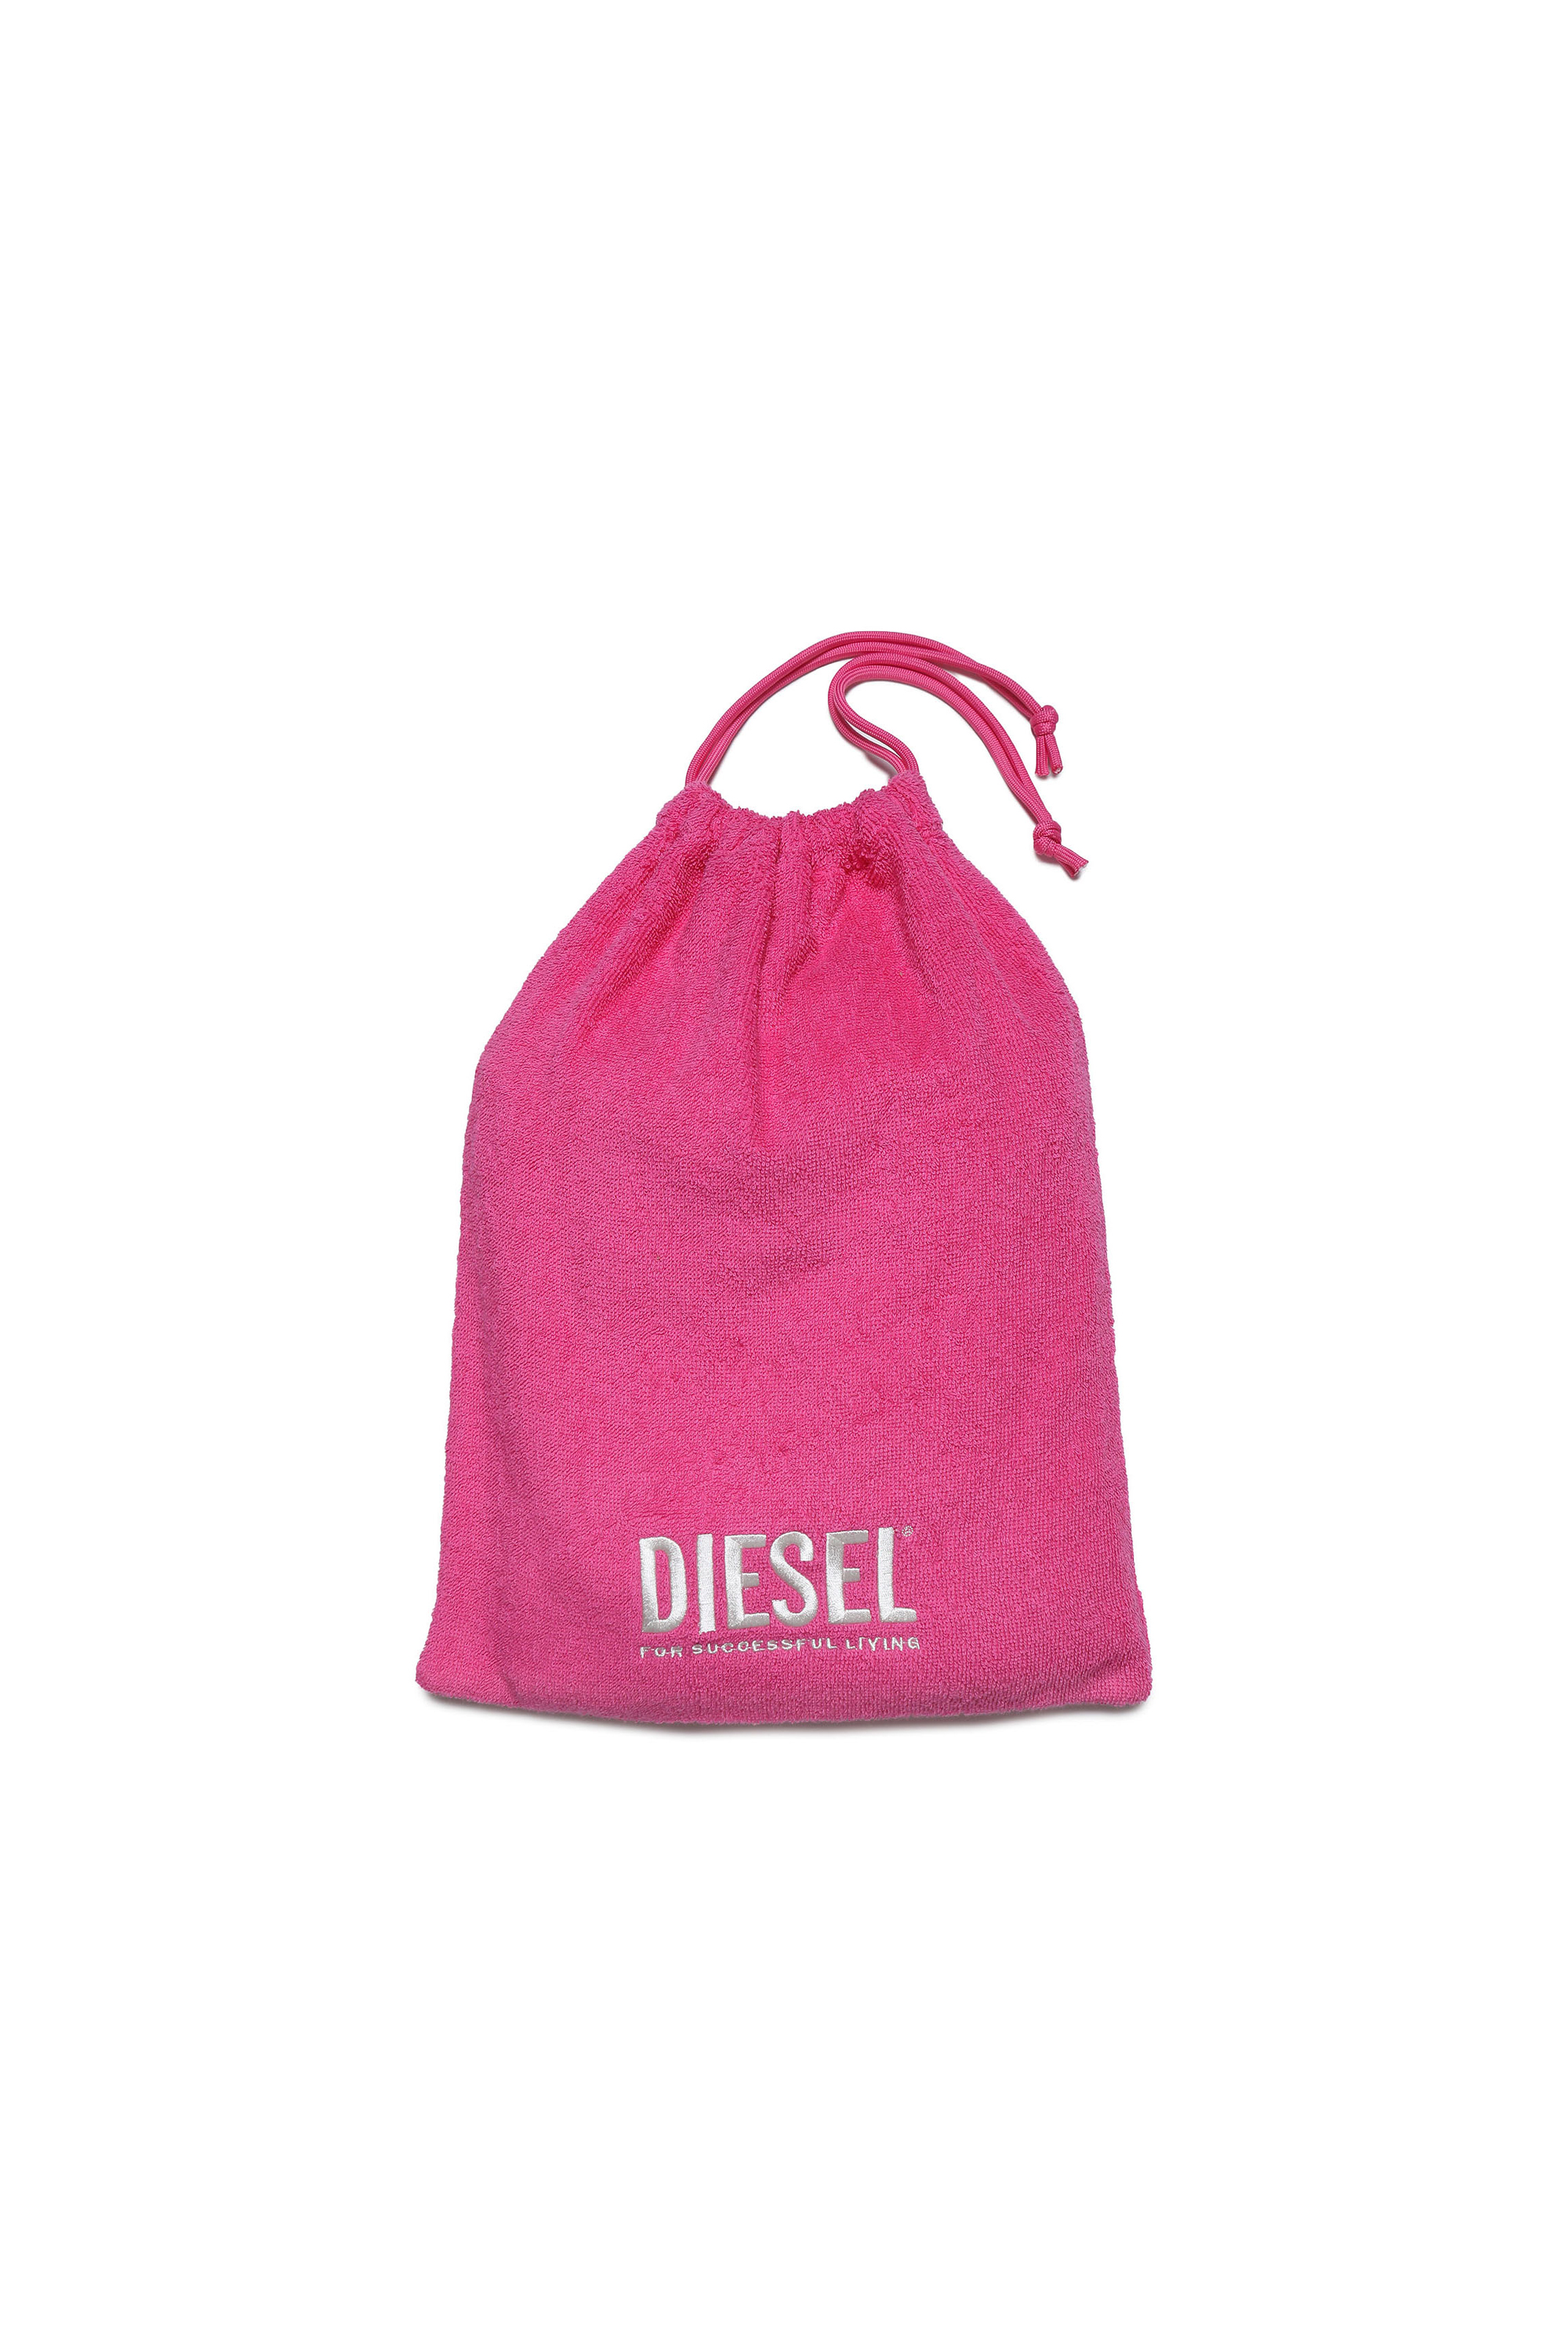 Diesel - MANDRYB, Rose - Image 3